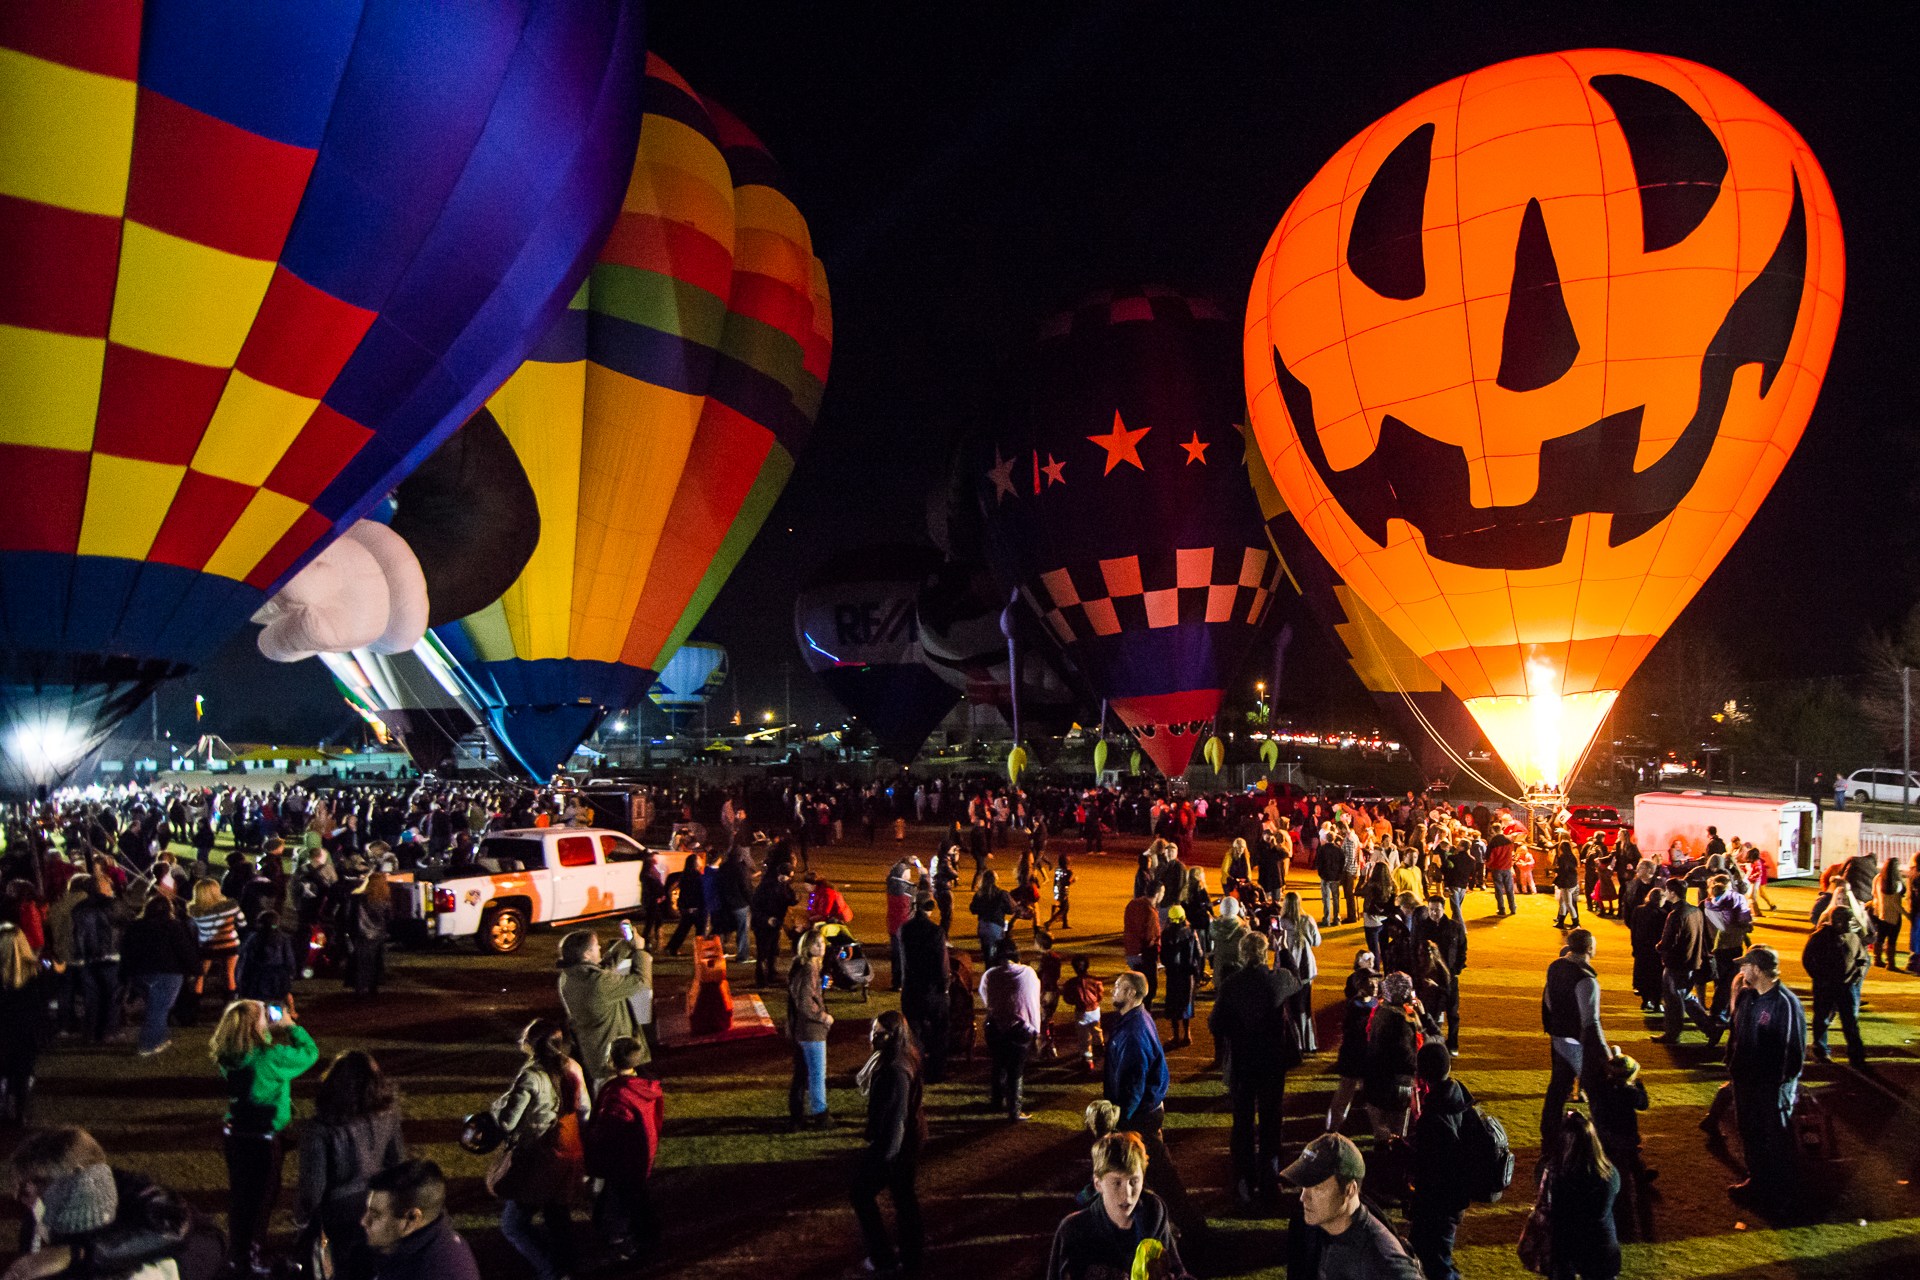 Owl-O-Ween Hot Air Balloon Festival 2014